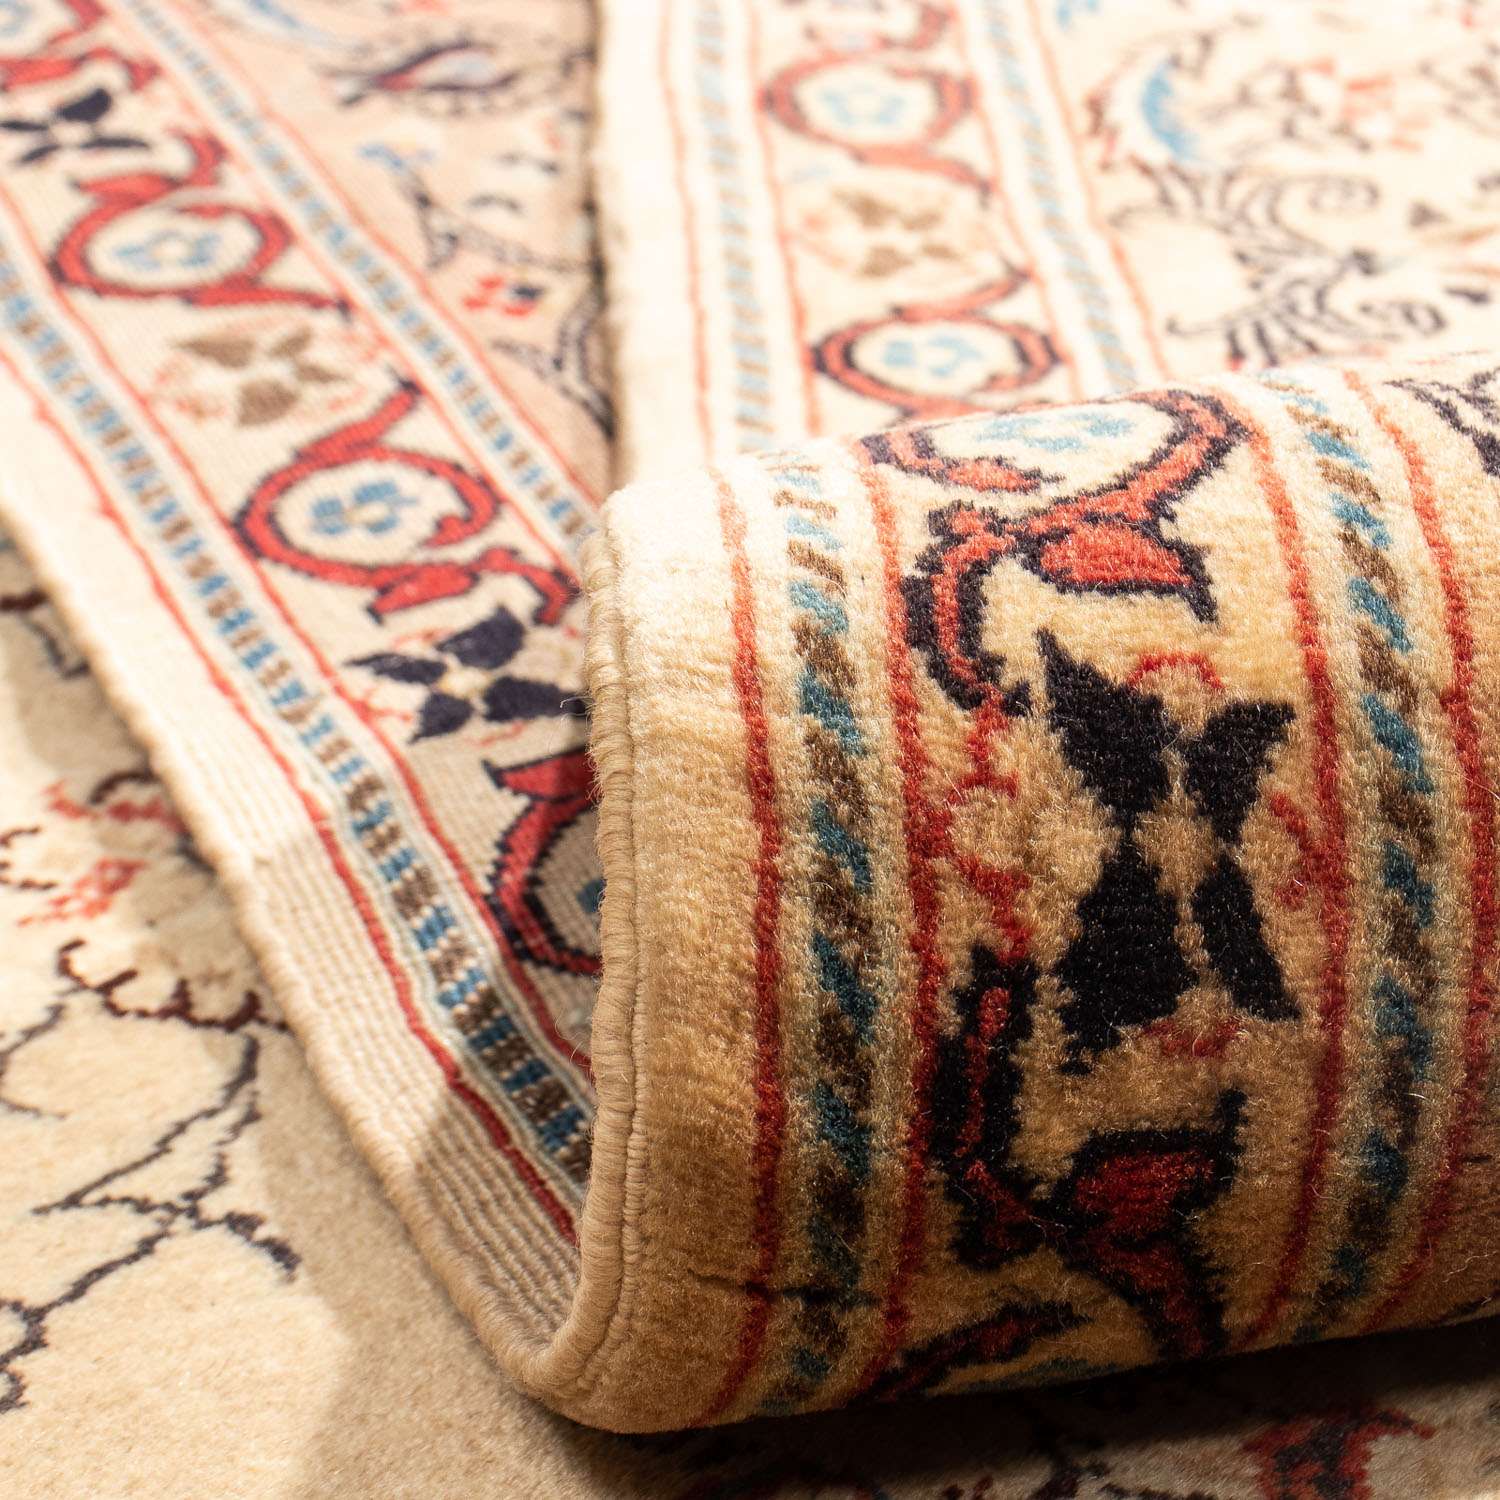 Perzisch tapijt - Klassiek - 287 x 205 cm - licht beige